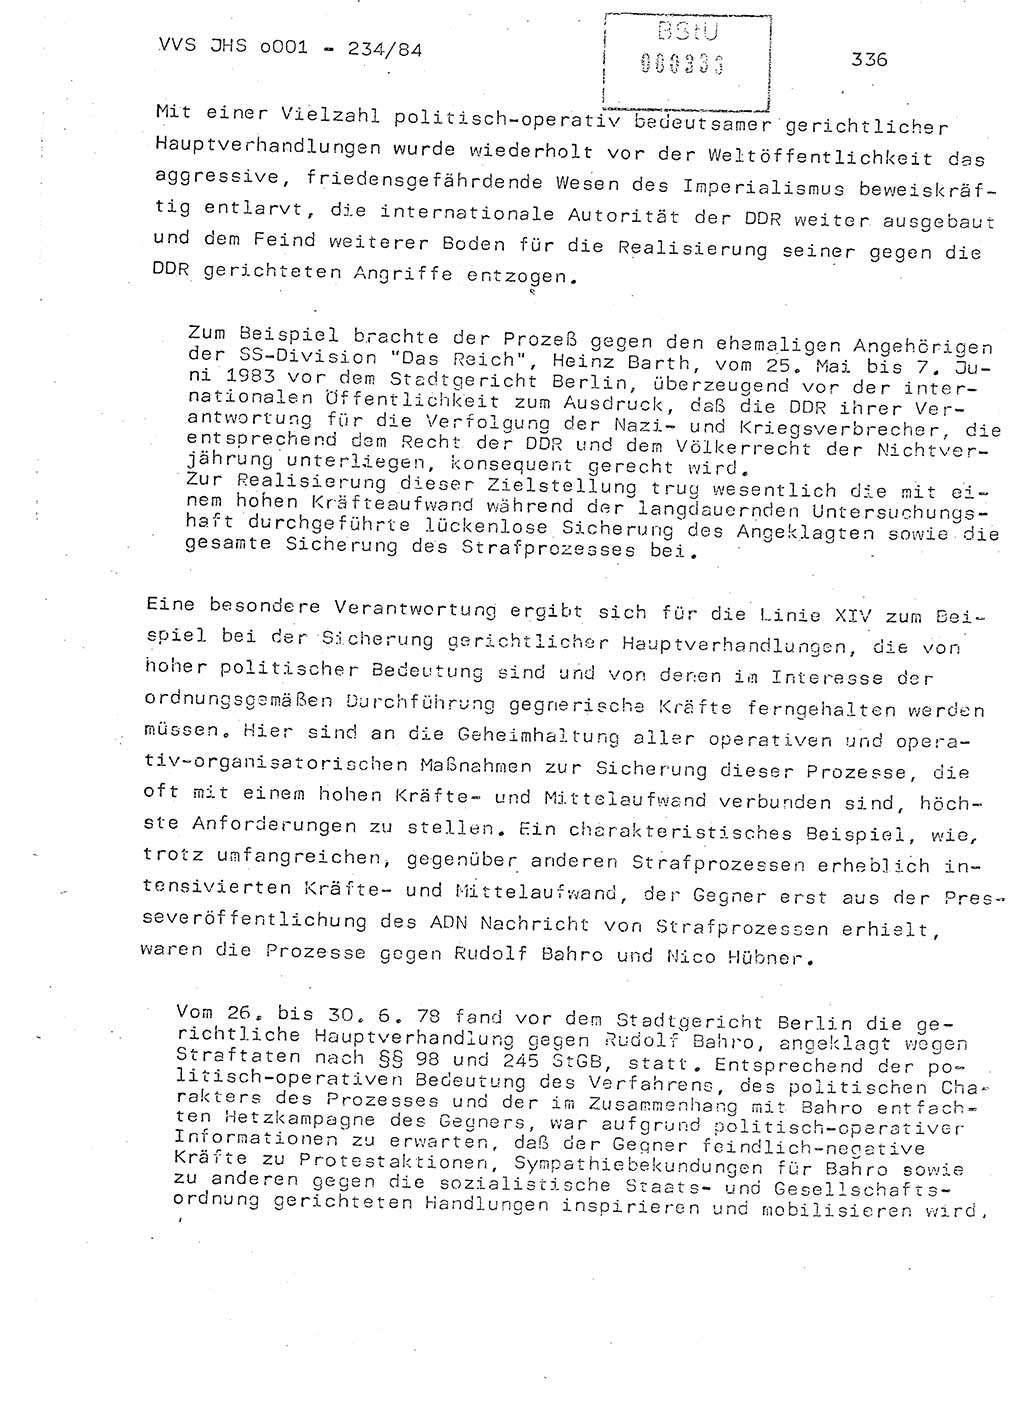 Dissertation Oberst Siegfried Rataizick (Abt. ⅩⅣ), Oberstleutnant Volkmar Heinz (Abt. ⅩⅣ), Oberstleutnant Werner Stein (HA Ⅸ), Hauptmann Heinz Conrad (JHS), Ministerium für Staatssicherheit (MfS) [Deutsche Demokratische Republik (DDR)], Juristische Hochschule (JHS), Vertrauliche Verschlußsache (VVS) o001-234/84, Potsdam 1984, Seite 336 (Diss. MfS DDR JHS VVS o001-234/84 1984, S. 336)